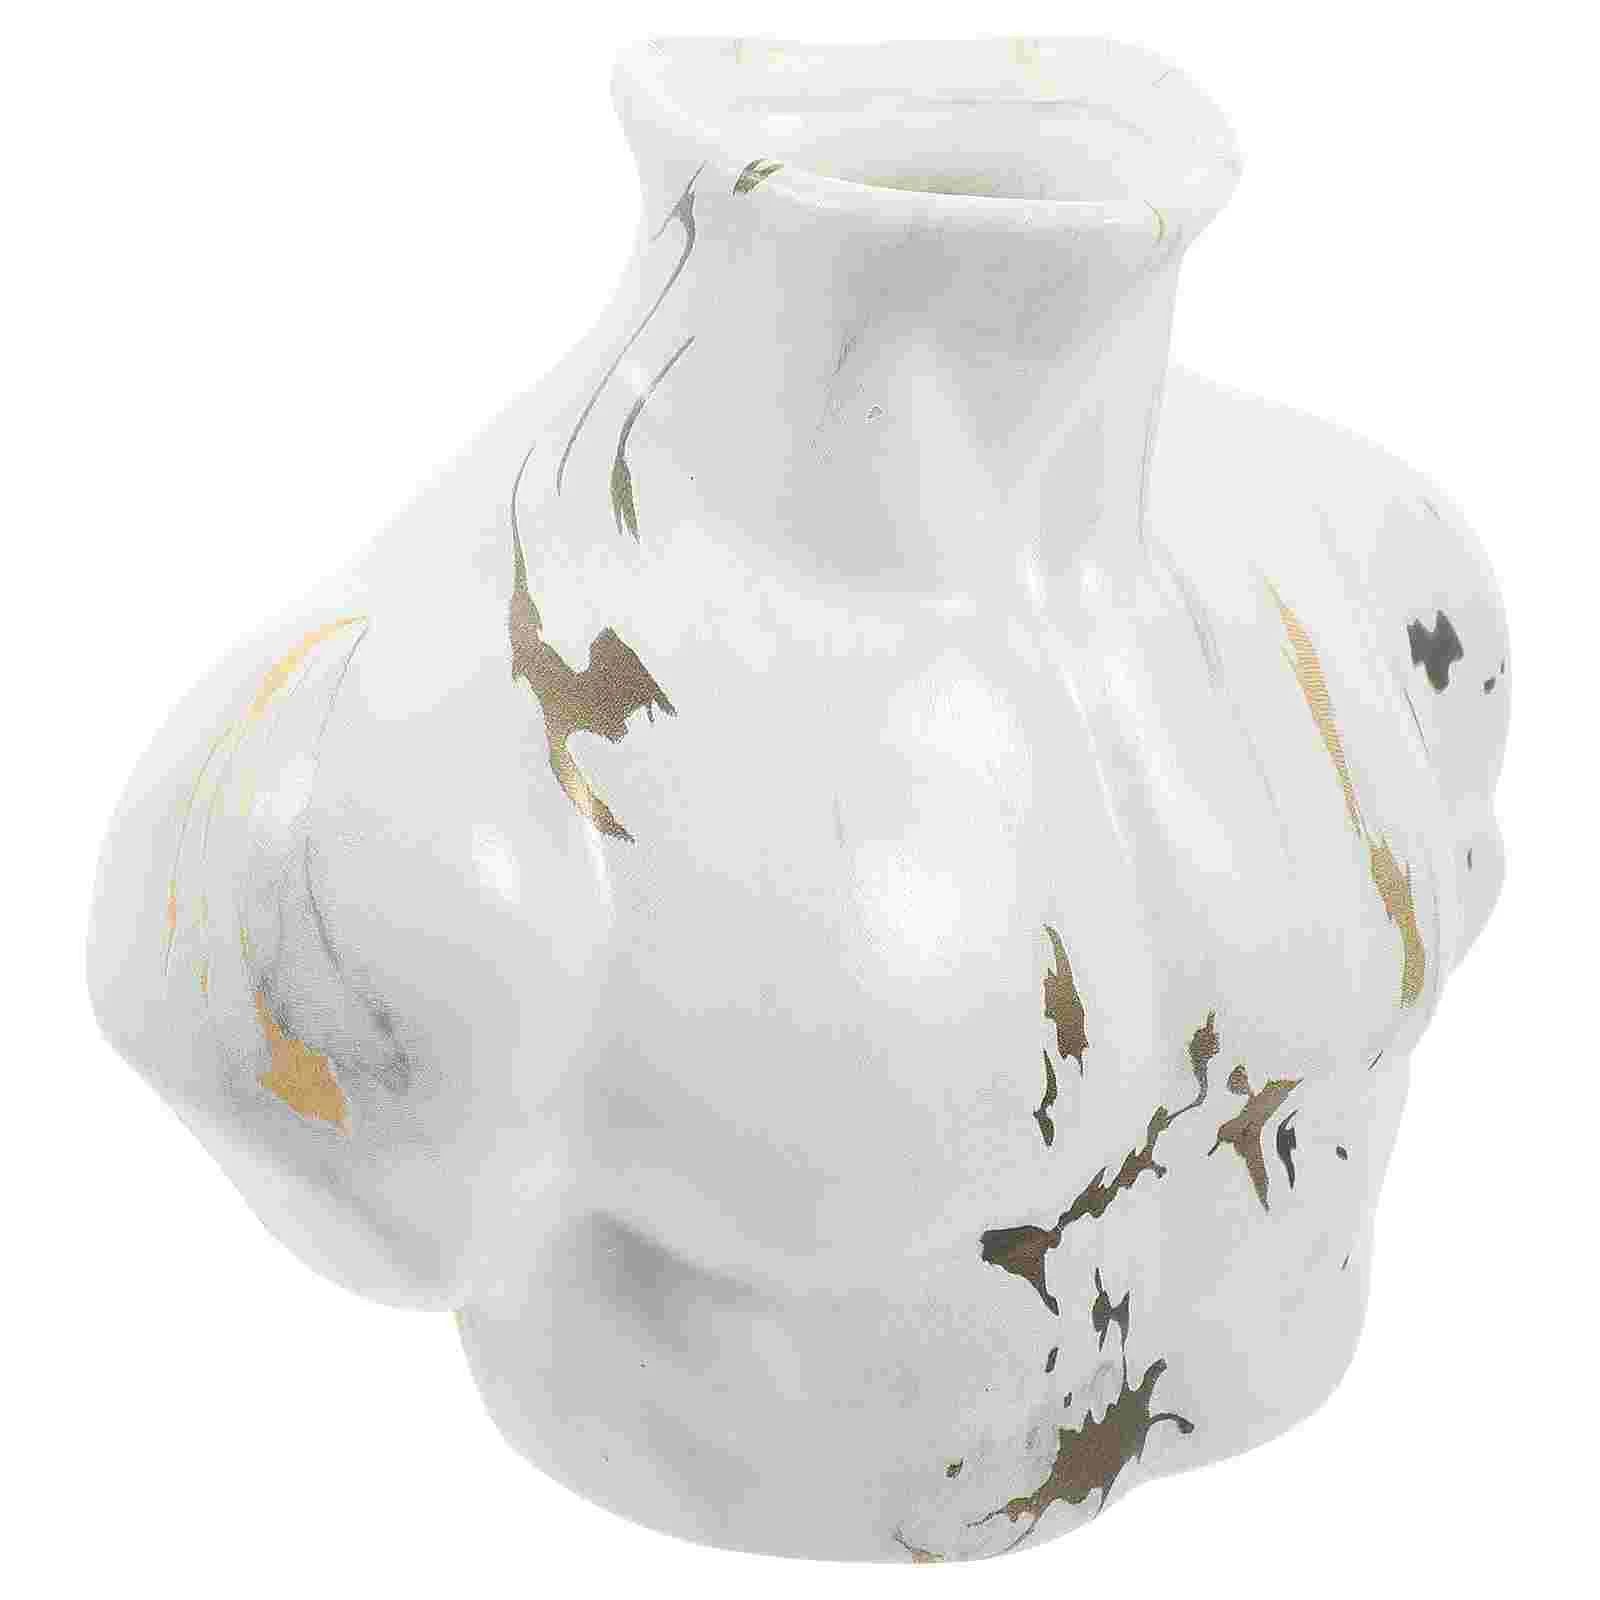 

Possible output: "Body Flower Vase Marble Male Body Vases Male Form Sculpture Flower Arrangement Vase Desktop Vase